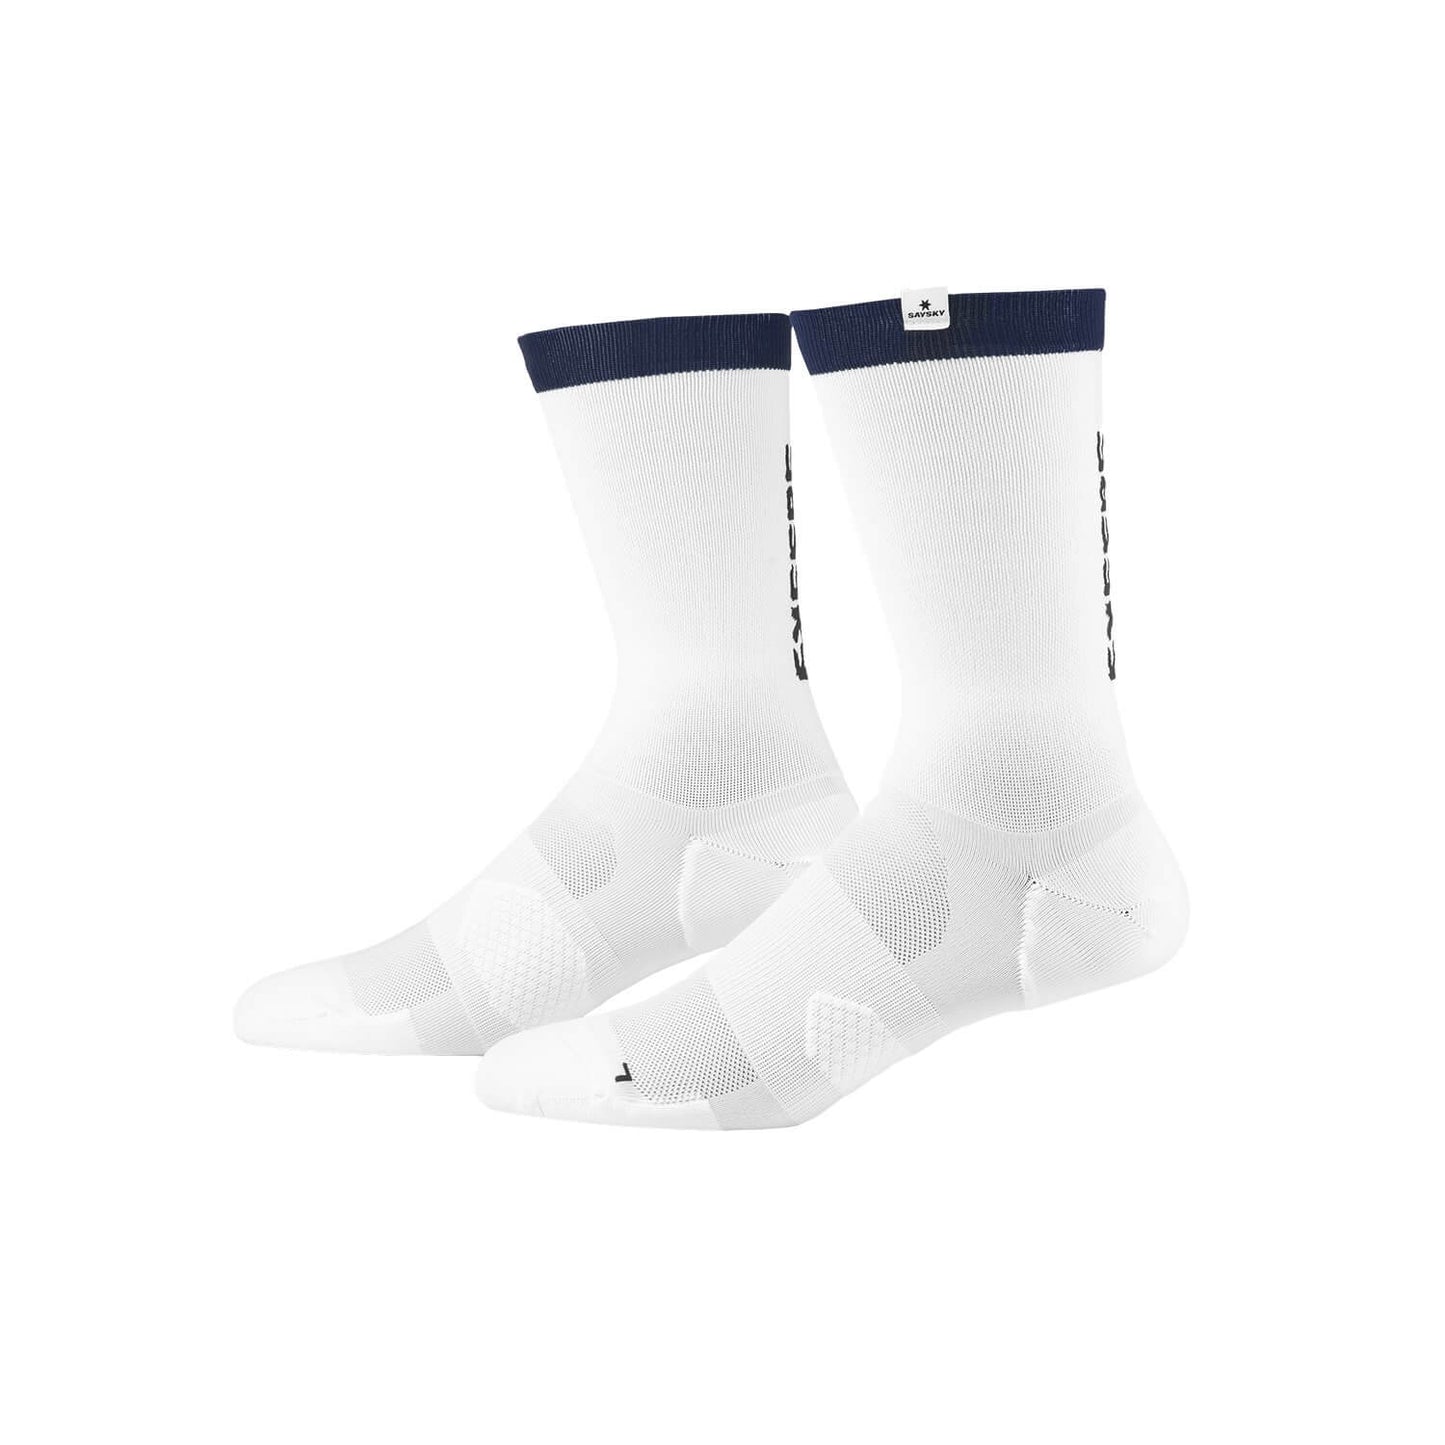 ランニングソックス FMASO04 High Combat Socks - White [ユニセックス]